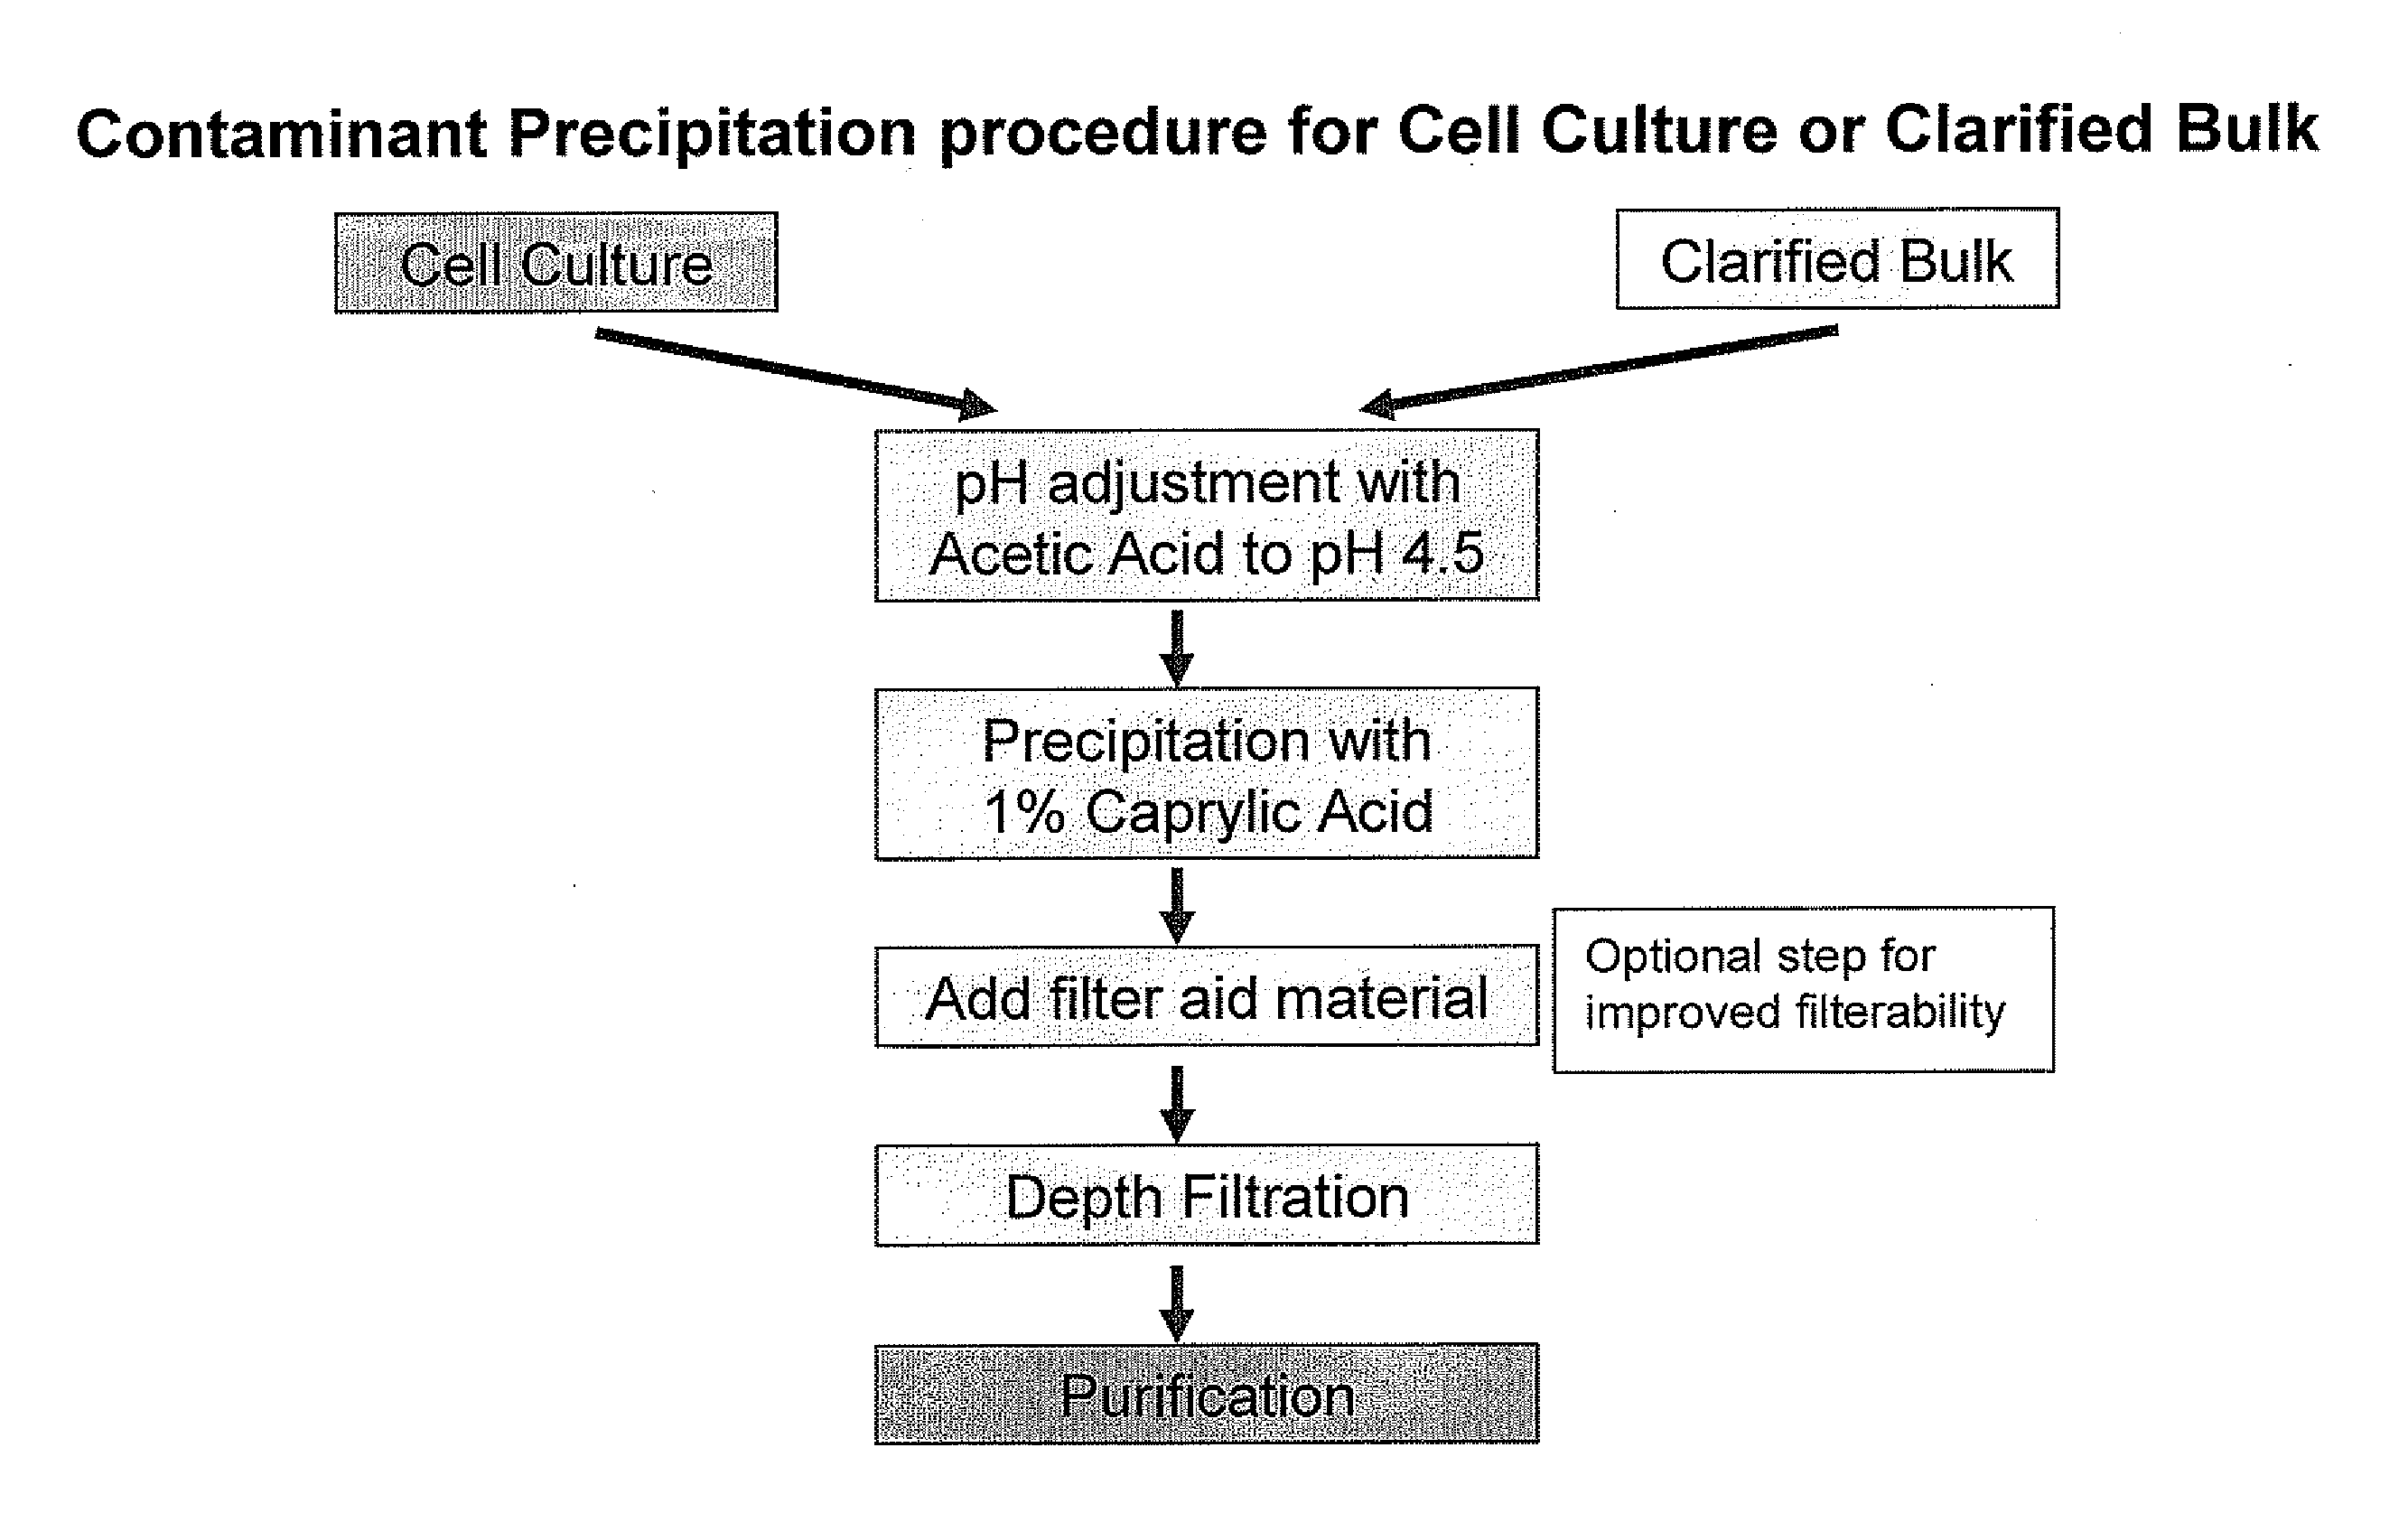 Protein purification by caprylic acid (octanoic acid) precipitation